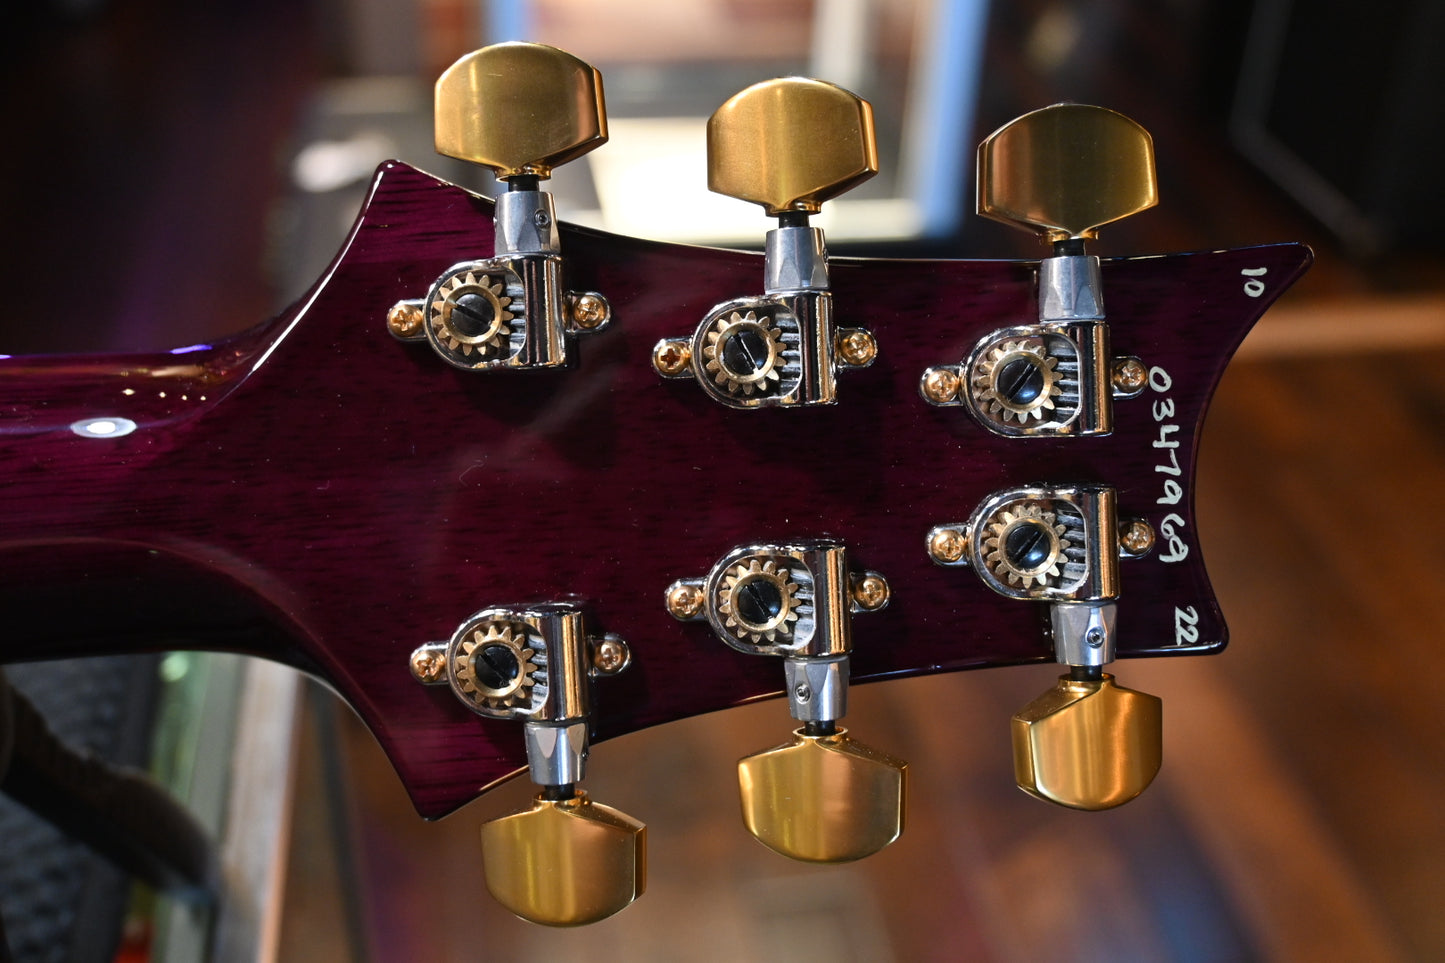 PRS Wood Library Custom 24 Lefty 10-Top One Piece Quilt - Aquableux Purple Burst Guitar #7969 - Danville Music